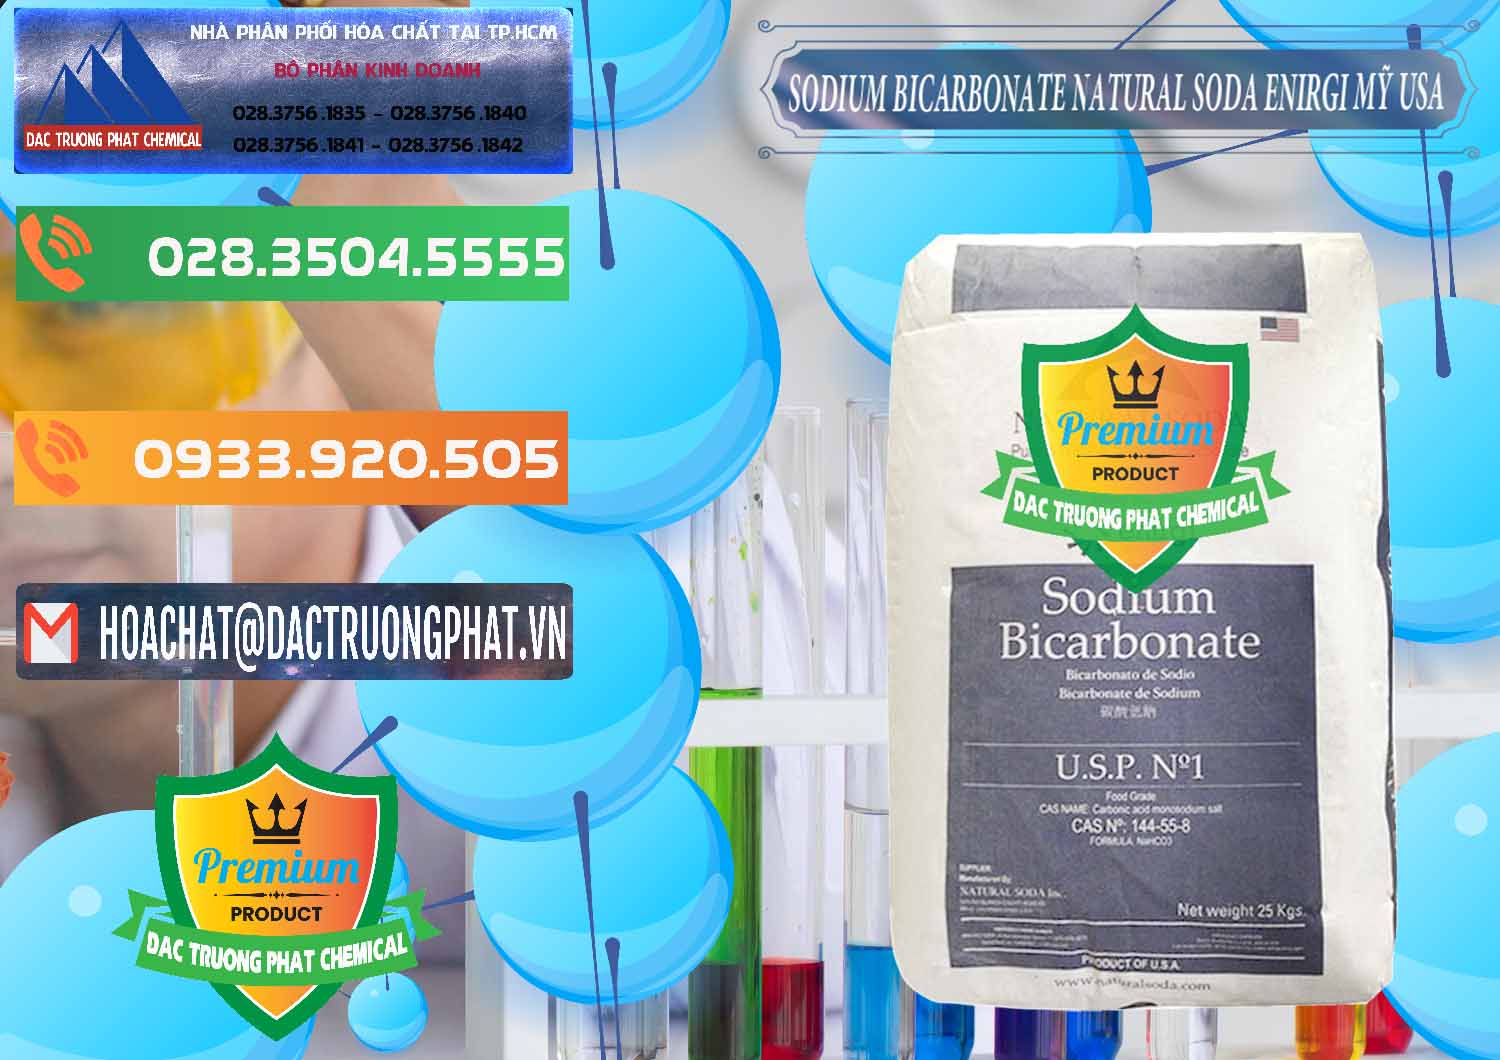 Công ty chuyên cung ứng ( bán ) Sodium Bicarbonate – Bicar NaHCO3 Food Grade Natural Soda Enirgi Mỹ USA - 0257 - Đơn vị chuyên kinh doanh ( phân phối ) hóa chất tại TP.HCM - hoachatxulynuoc.com.vn